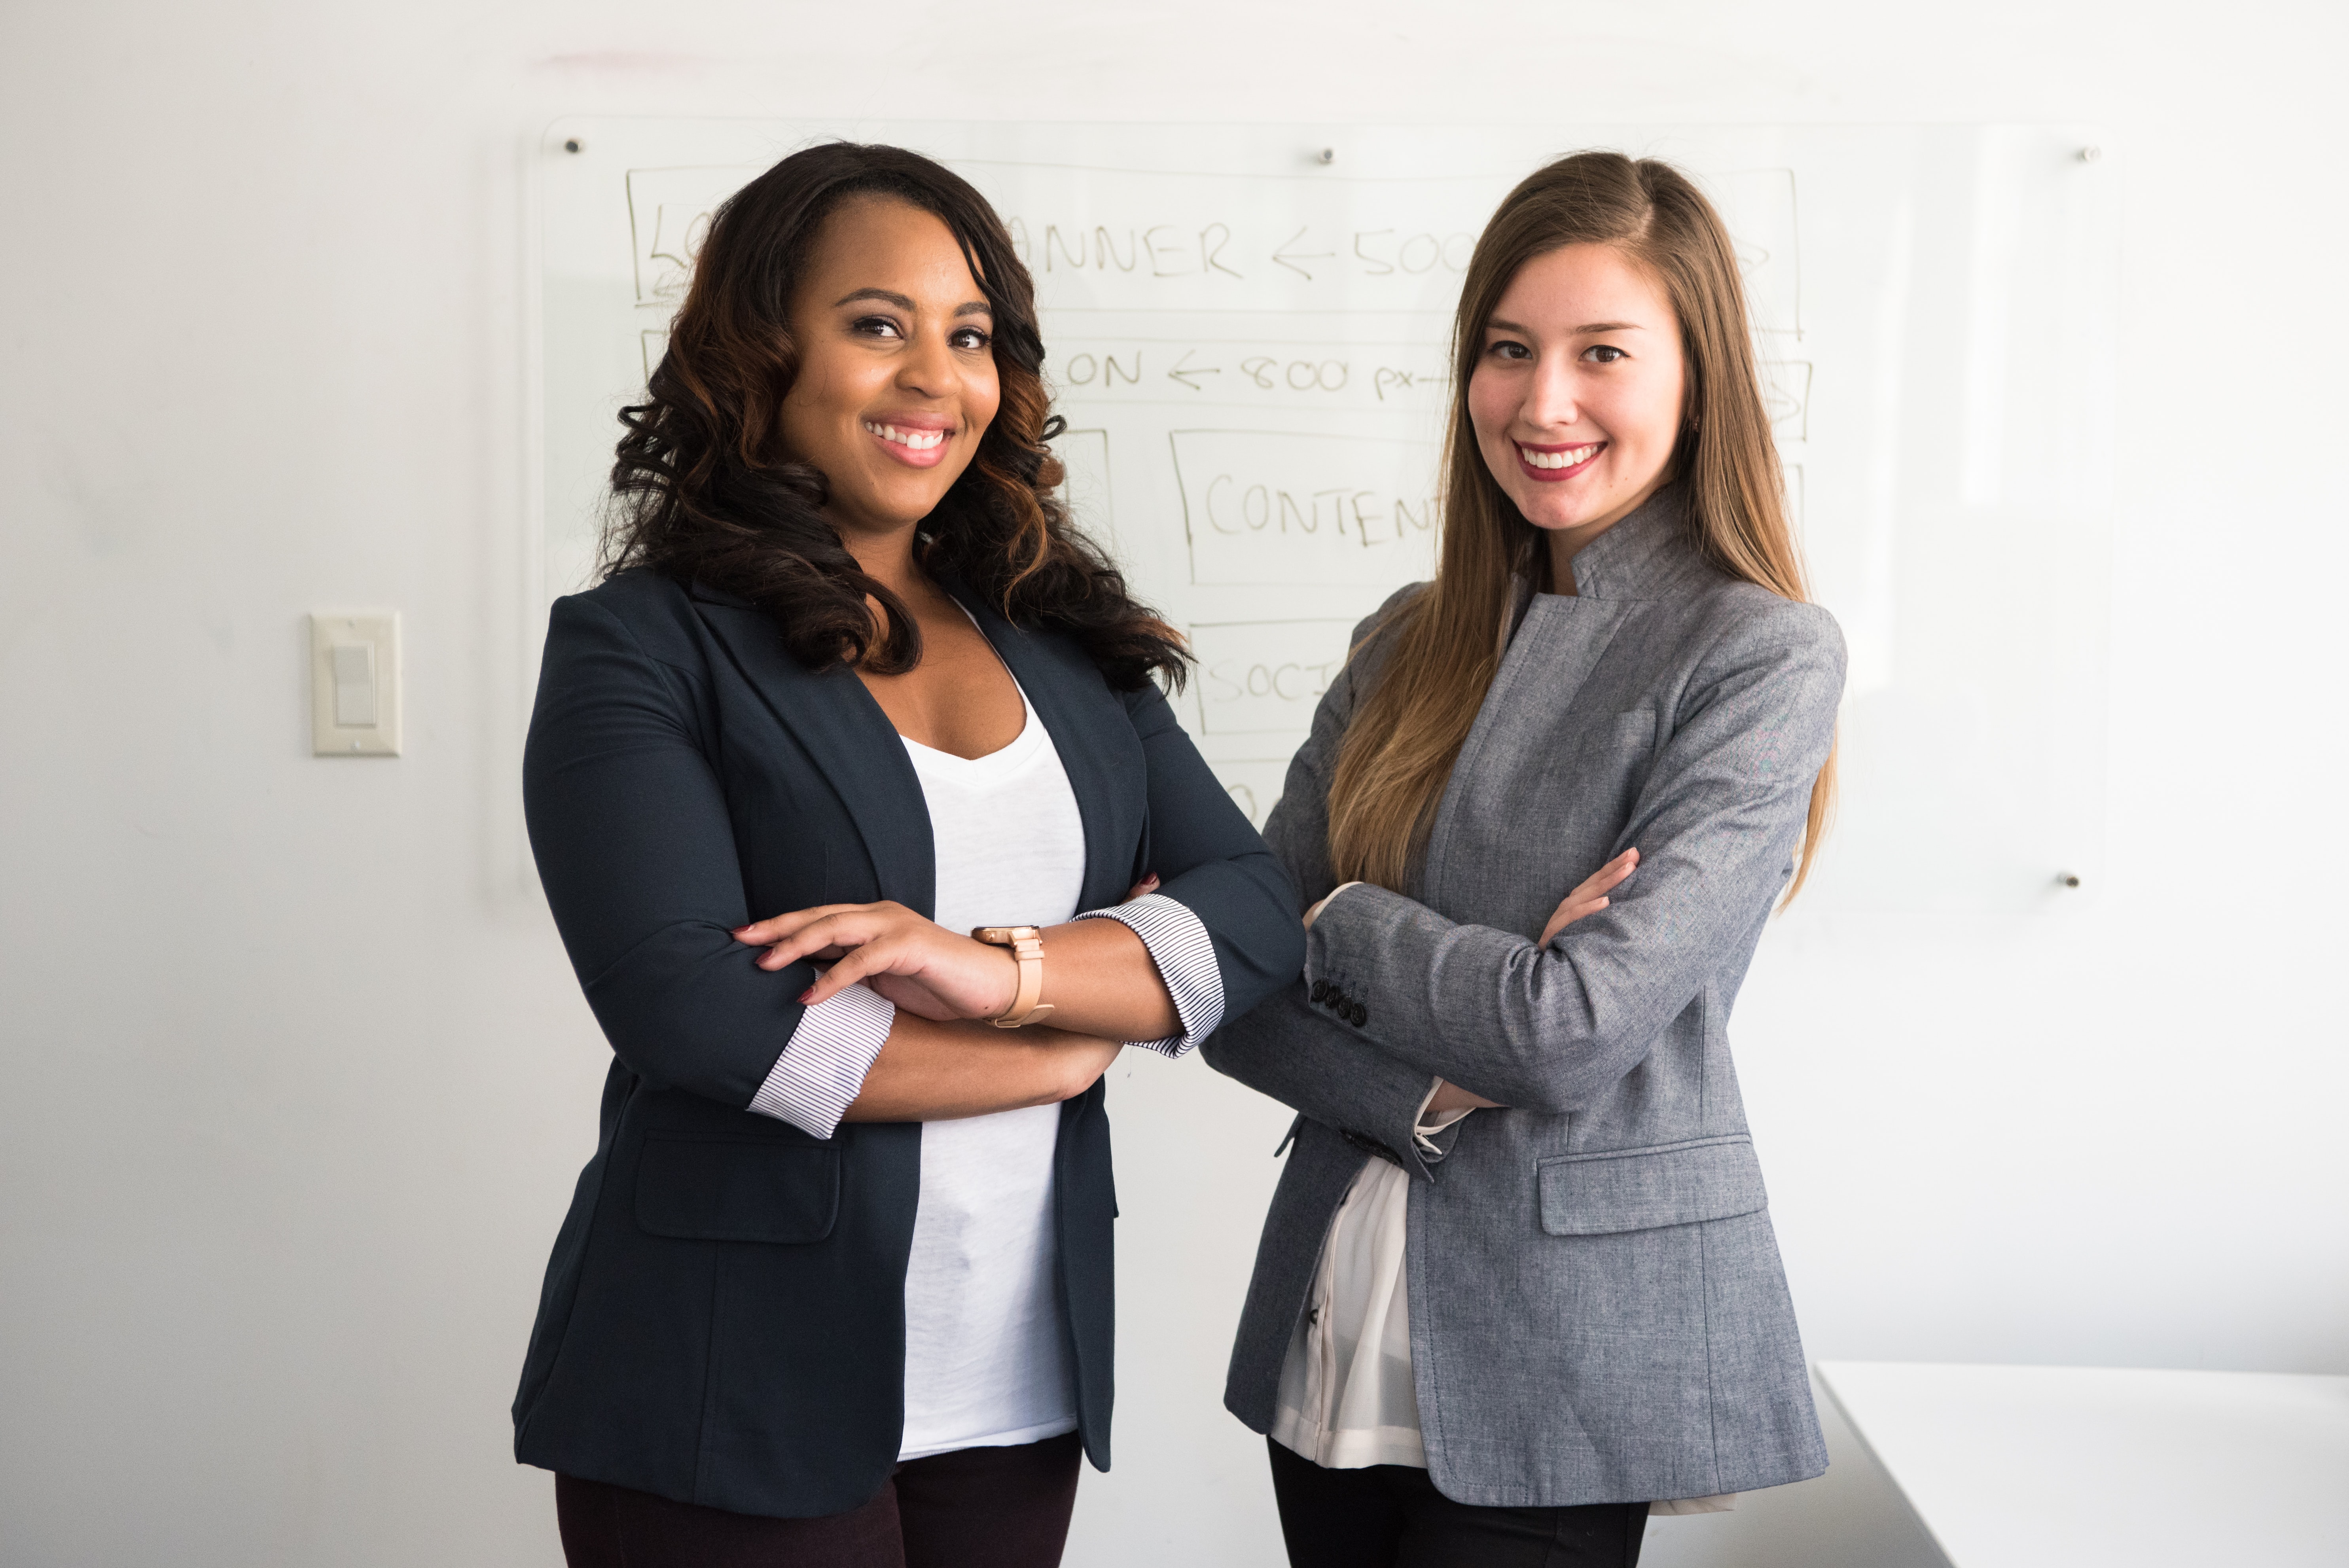 Female Entry level workers seeking career mentors